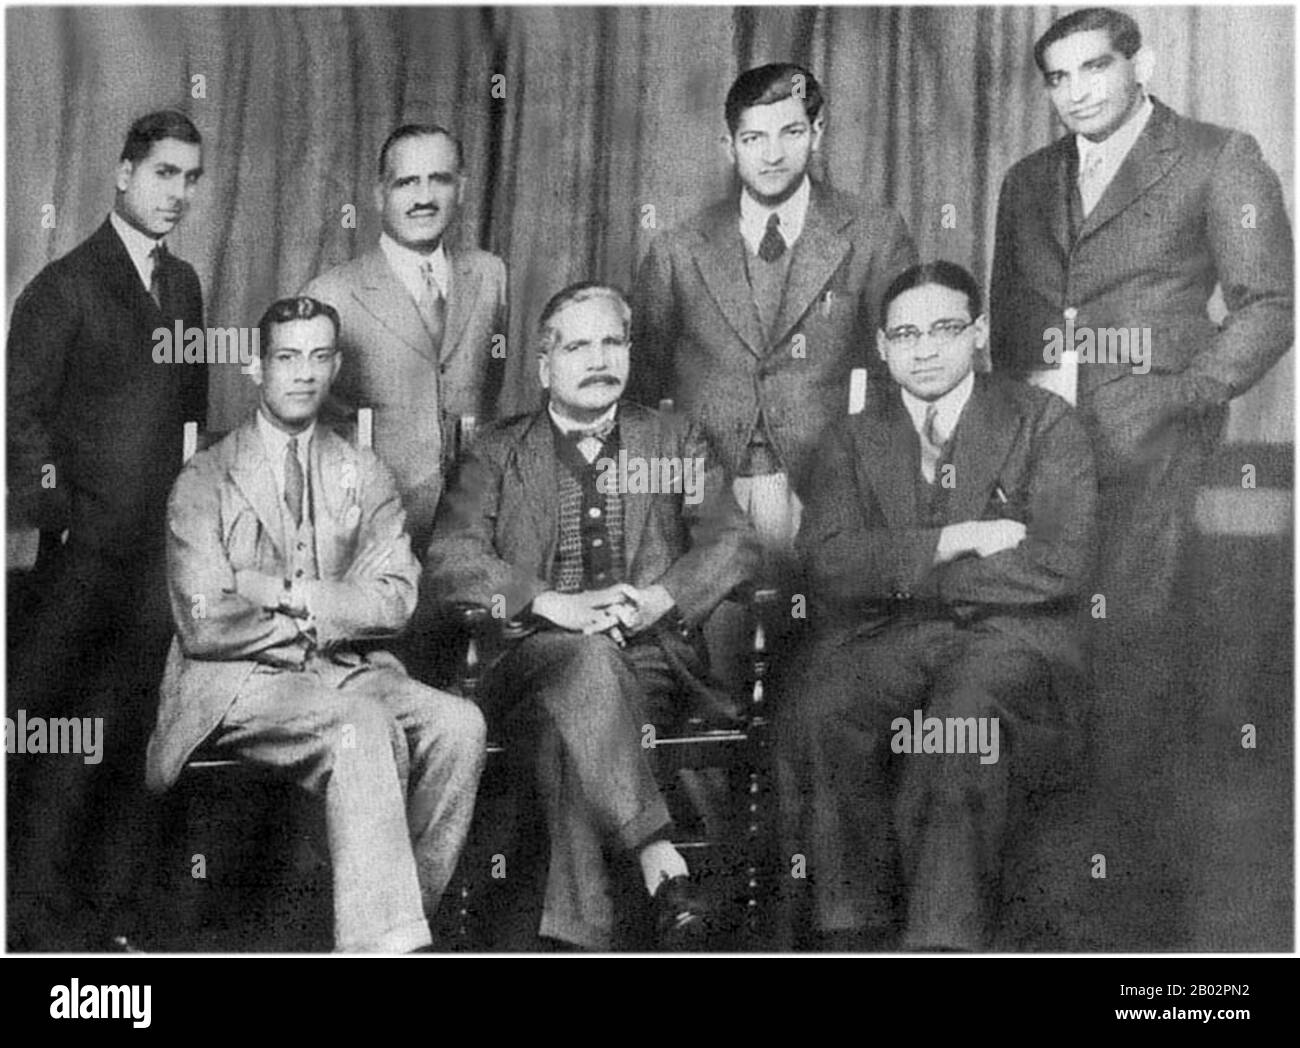 Choudhry Rahmat Ali (Choudhry Rahmat Ali, 16 novembre 1895 – 3 febbraio 1951) è stato un nazionalista musulmano pakistano, uno dei primi sostenitori della creazione dello stato del Pakistan. Gli viene attribuito il nome di Pakistan per una patria musulmana separata nell'Asia meridionale ed è generalmente noto come fondatore del movimento per la sua creazione. Sir Muhammad Iqbal (Londra, 9 novembre 1877 – Parigi, 21 aprile 1938) è stato un . È considerato uno dei personaggi più importanti della letteratura urdu, con li Foto Stock